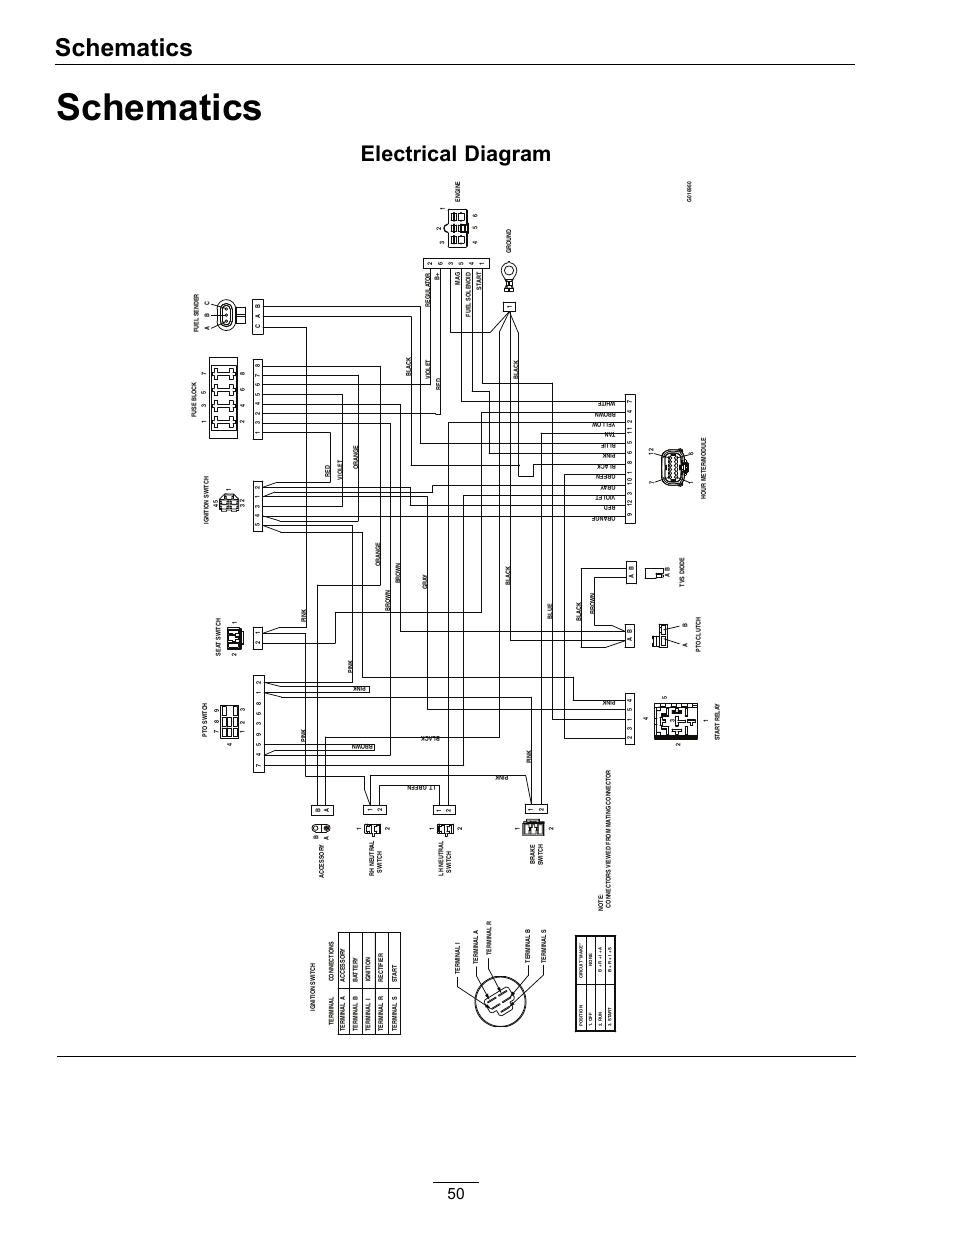 ls 53t1 4p wiring diagram